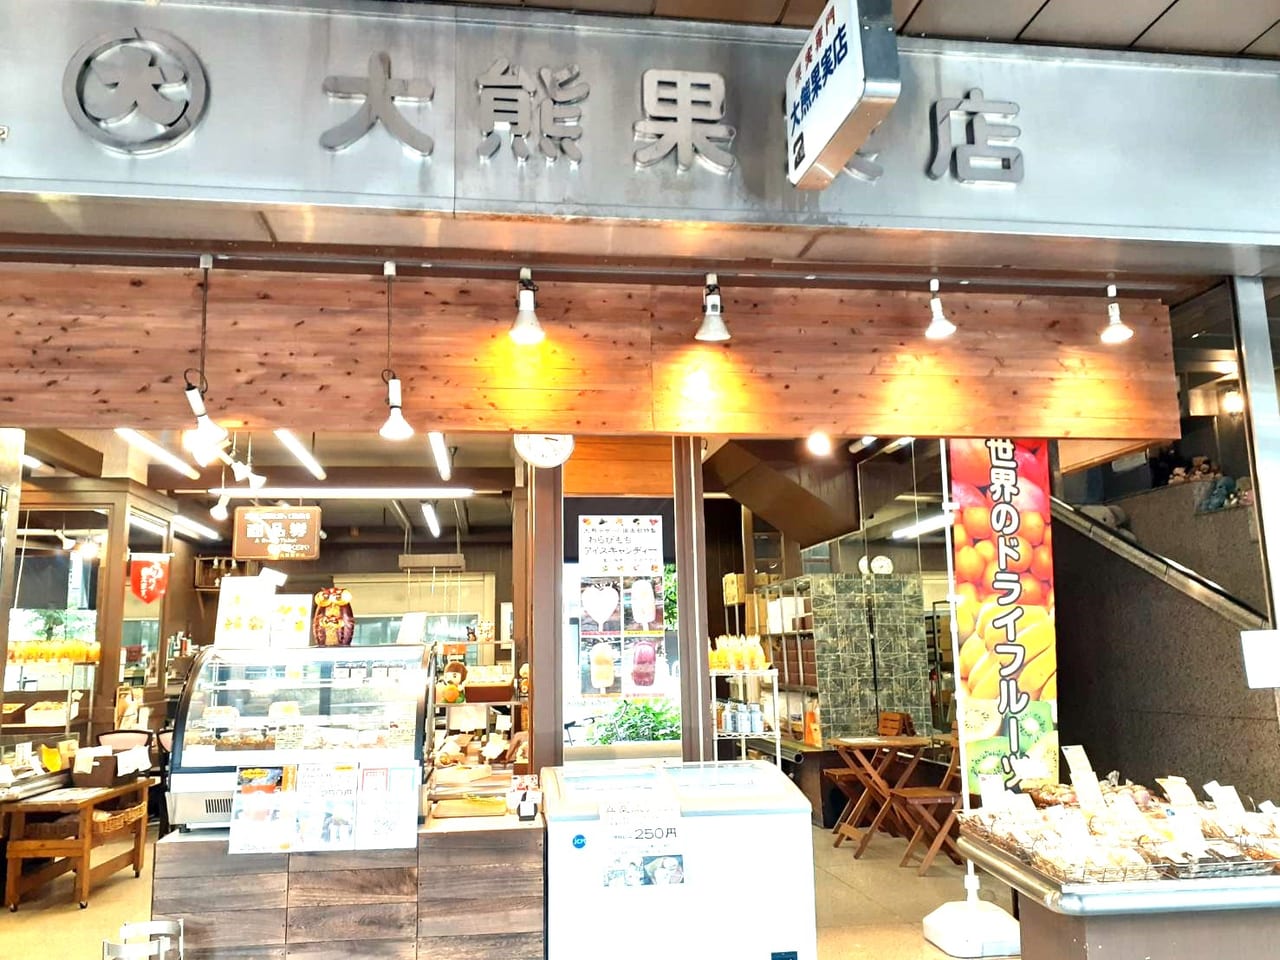 大熊果実店